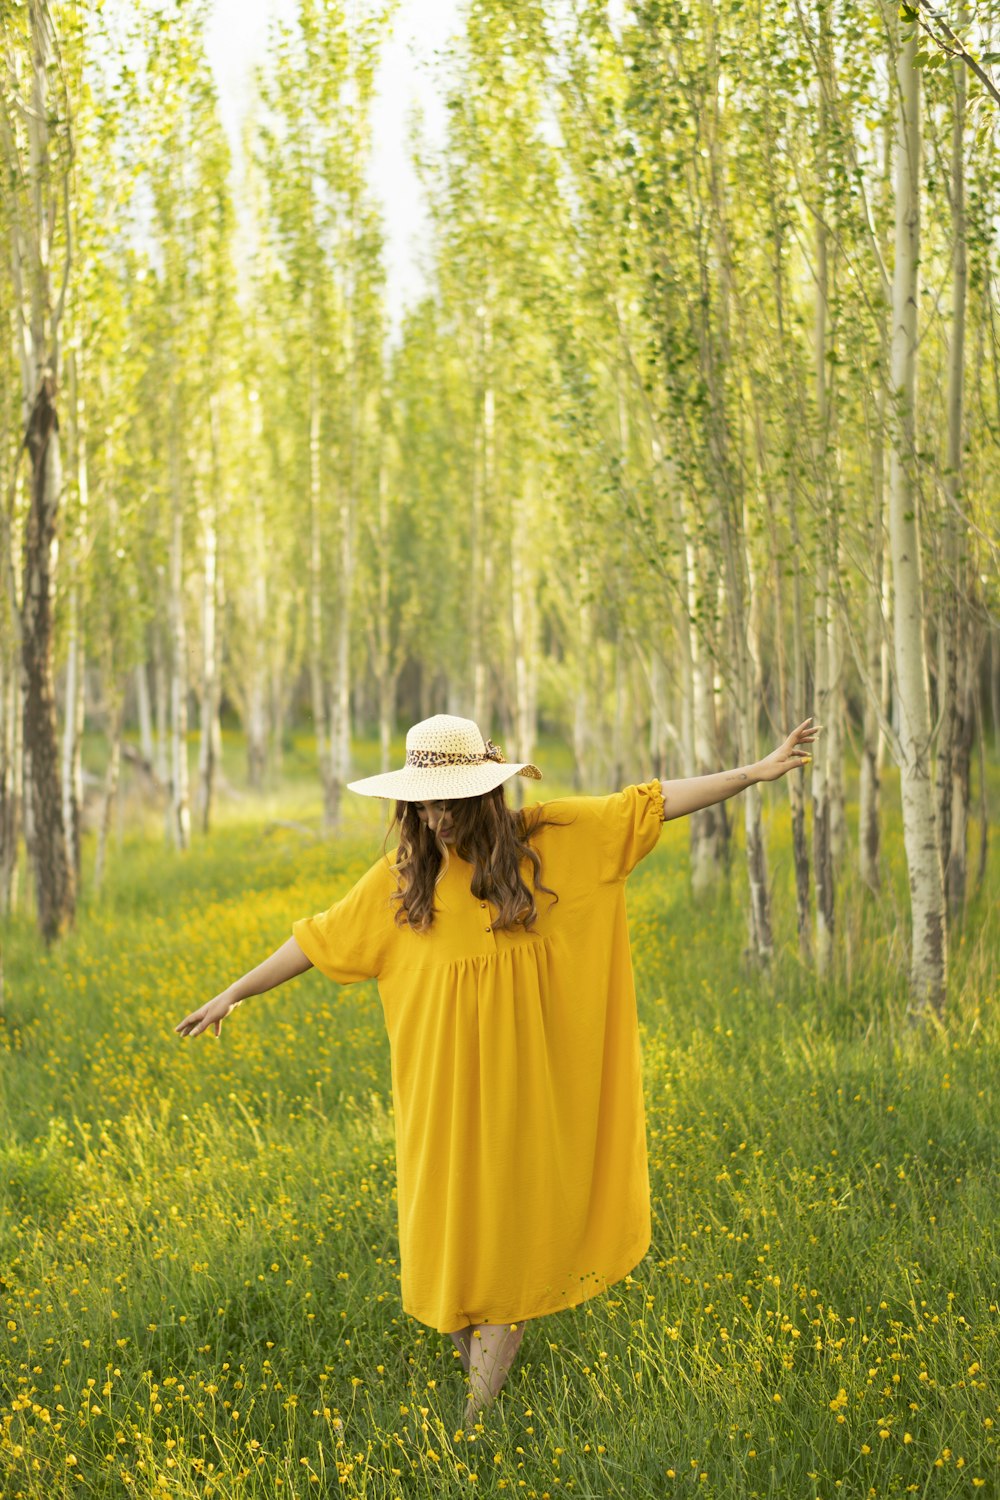 茶色の帽子をかぶった黄色いドレスを着た女性が昼間、緑の芝生の上に立っている